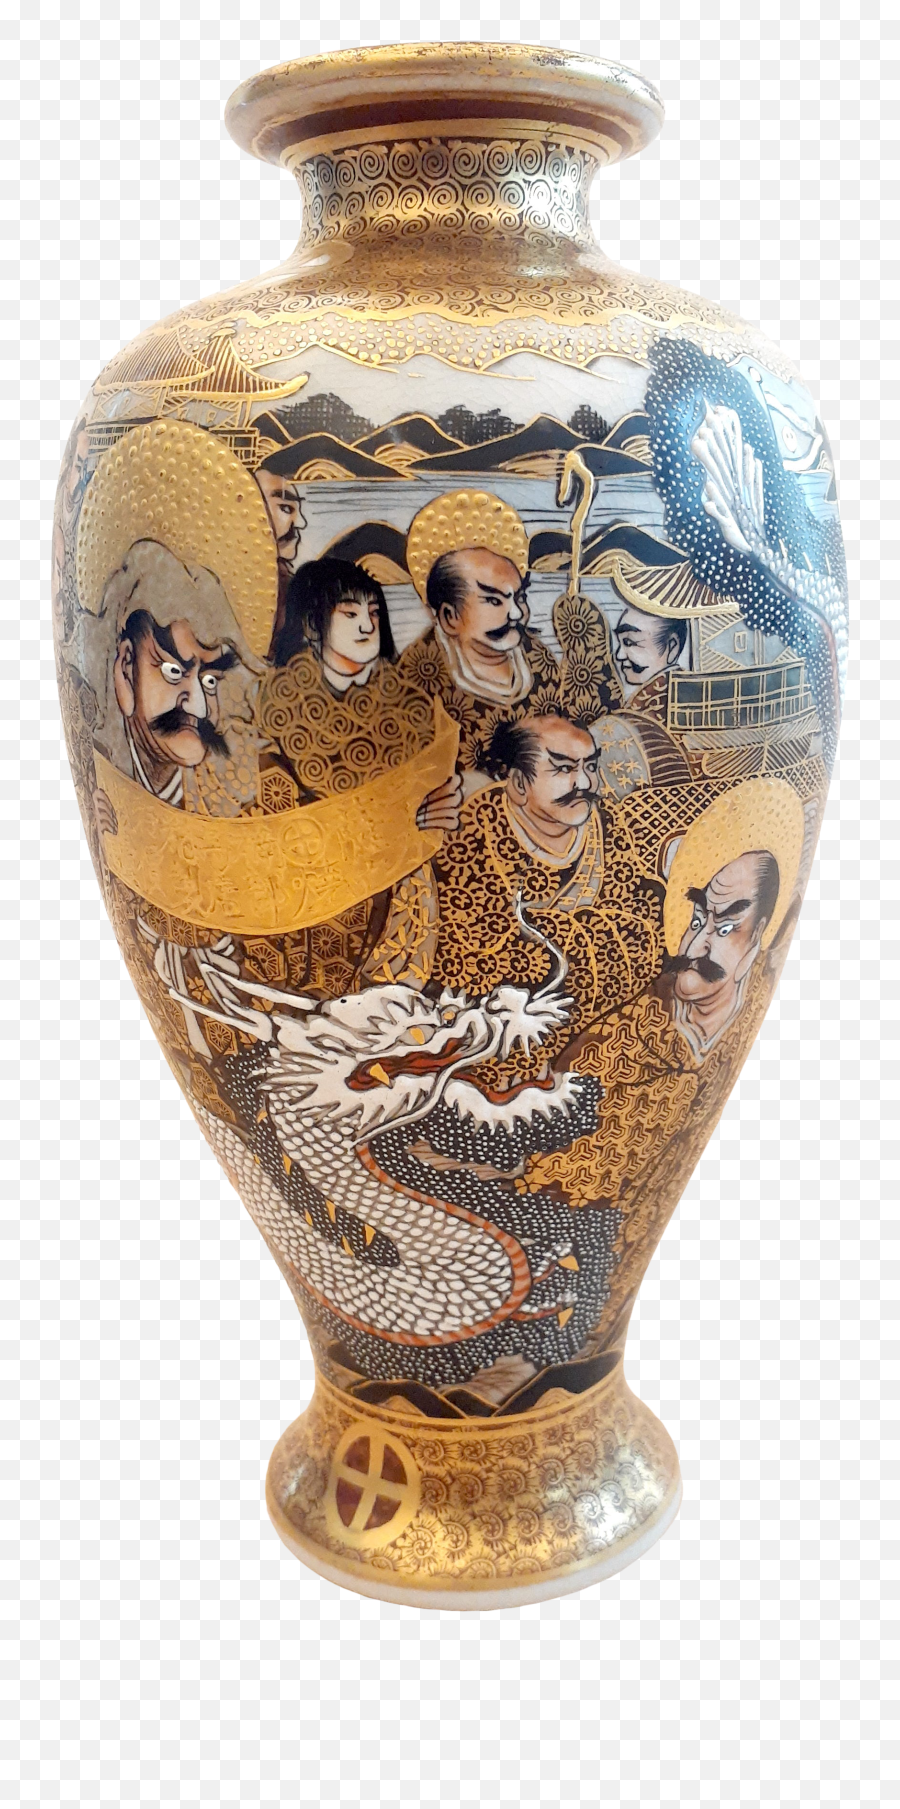 Late 19th Century Japanese Satsuma Porcelain Many Faces Vase Emoji,Japanese Text Emoticon Flower Face